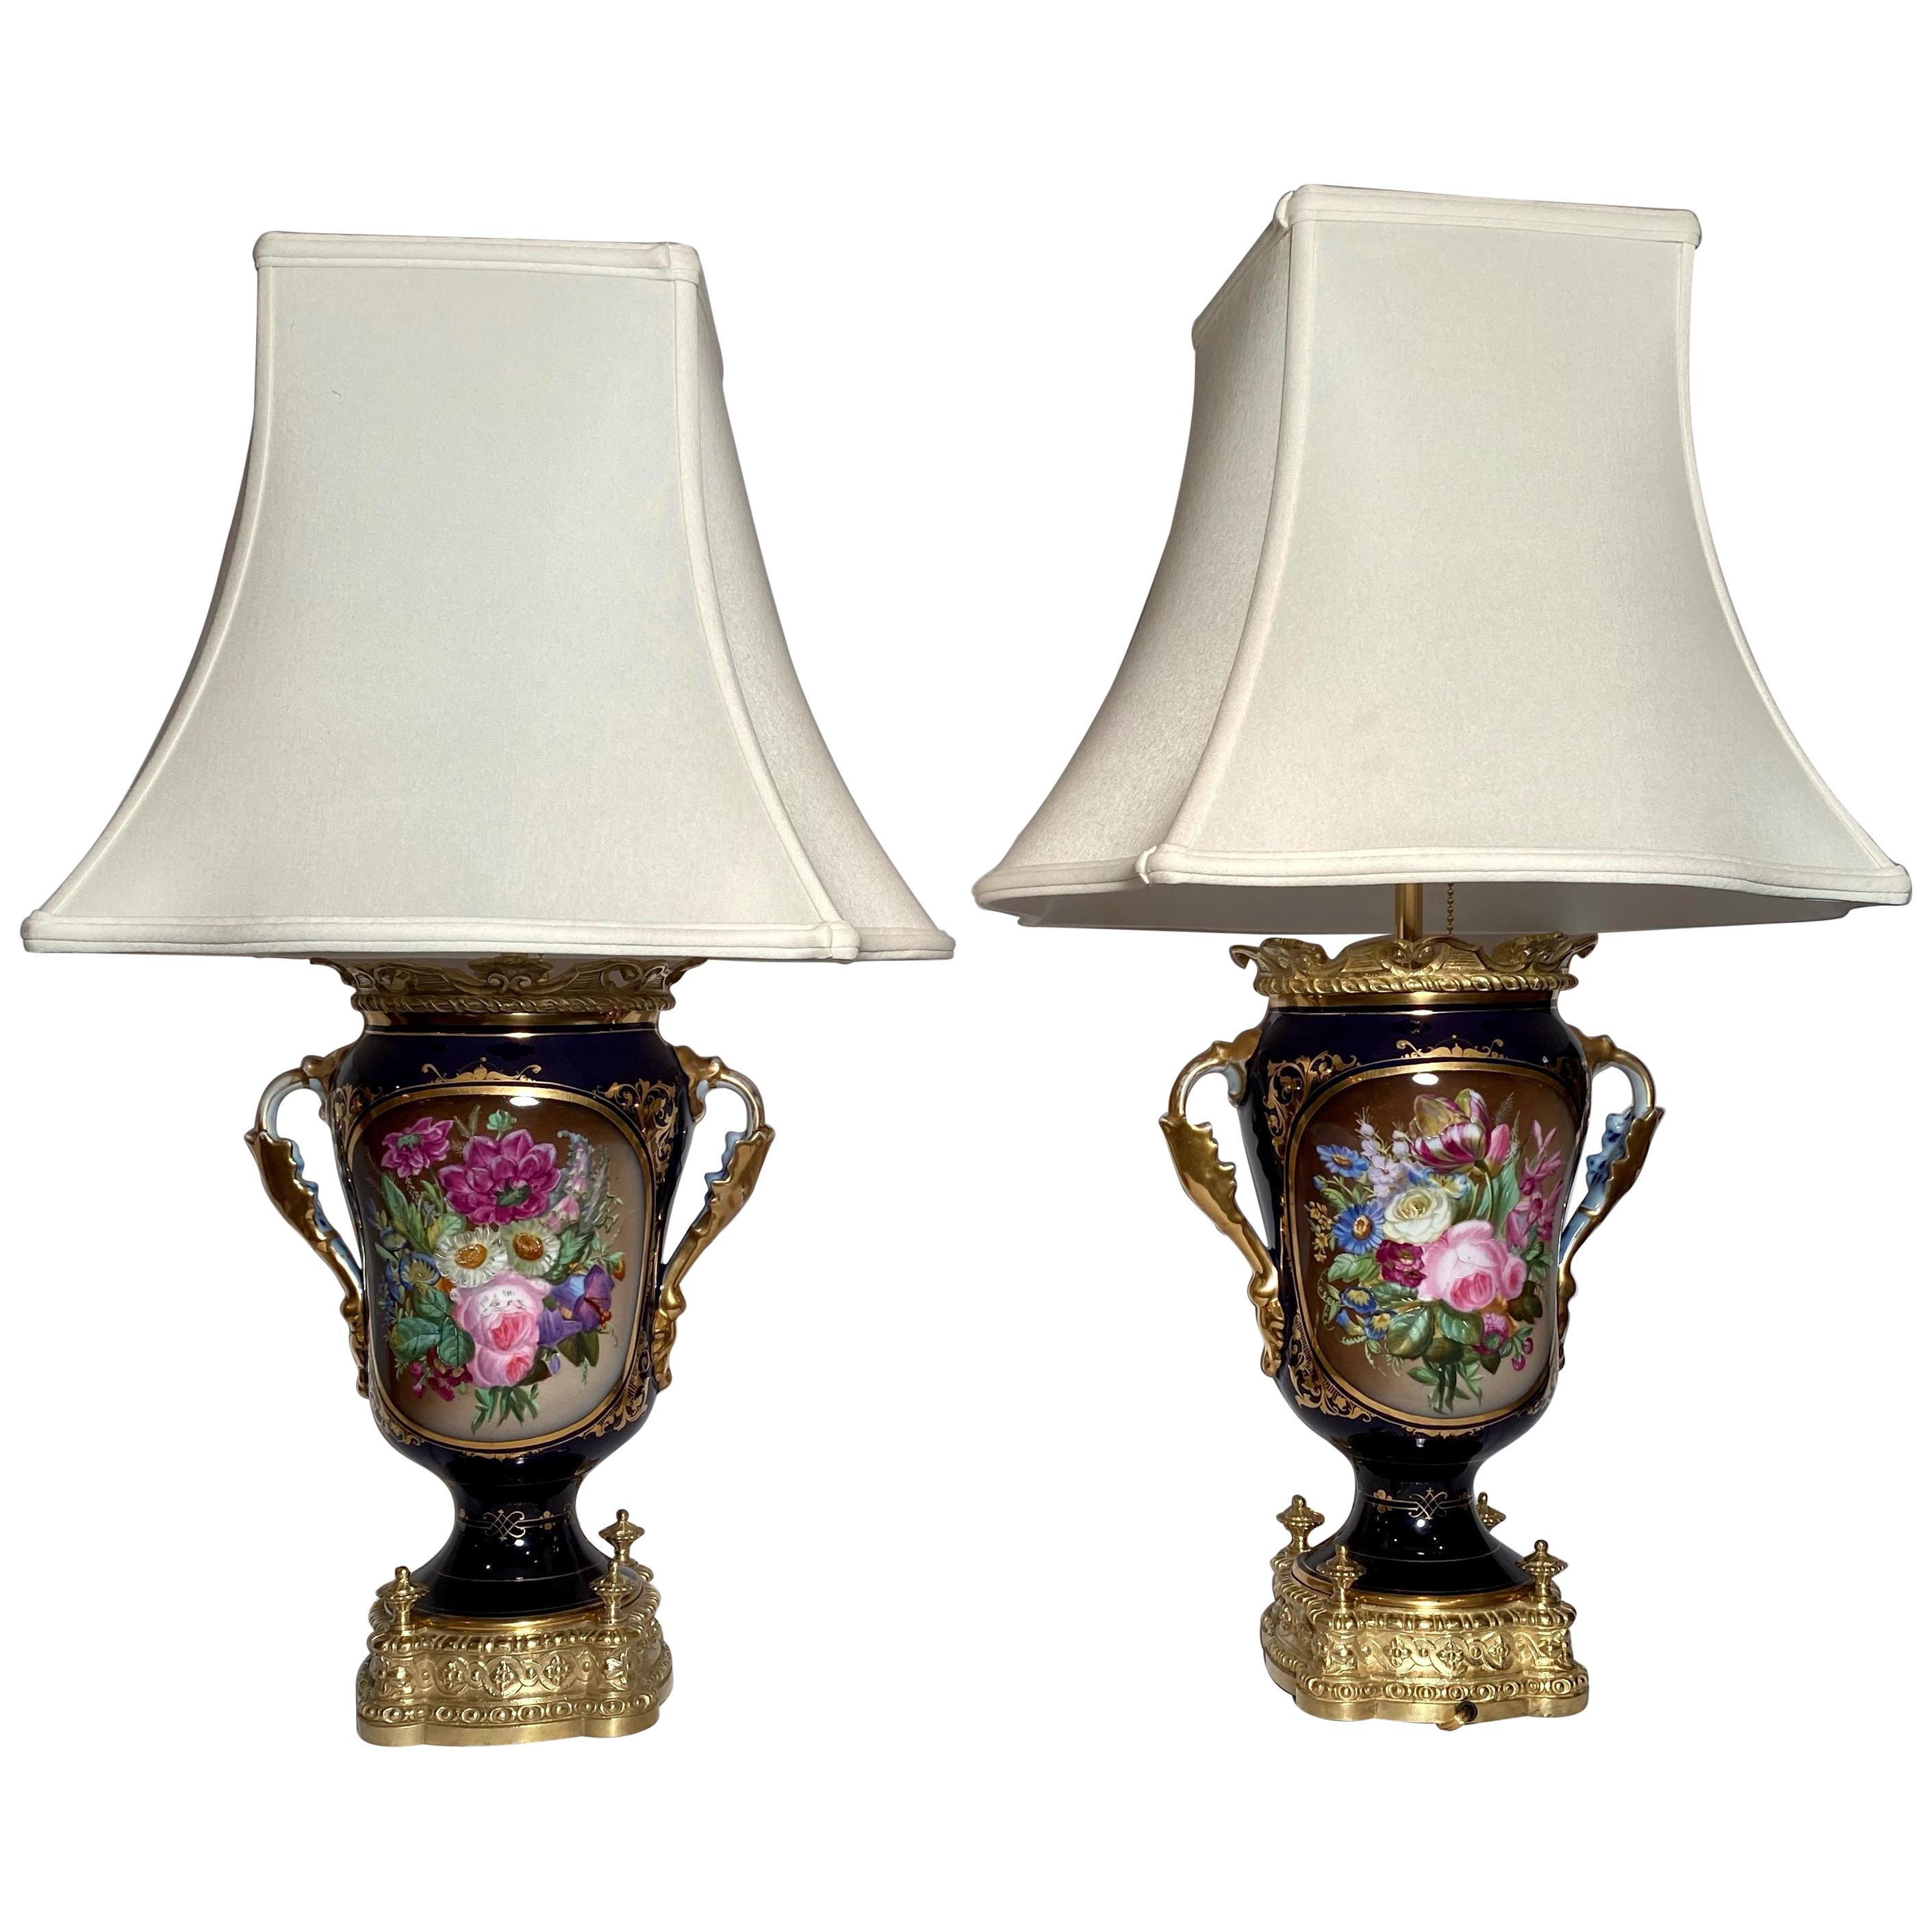 Paire de lampes anciennes en porcelaine de Vieux Paris, vers 1880